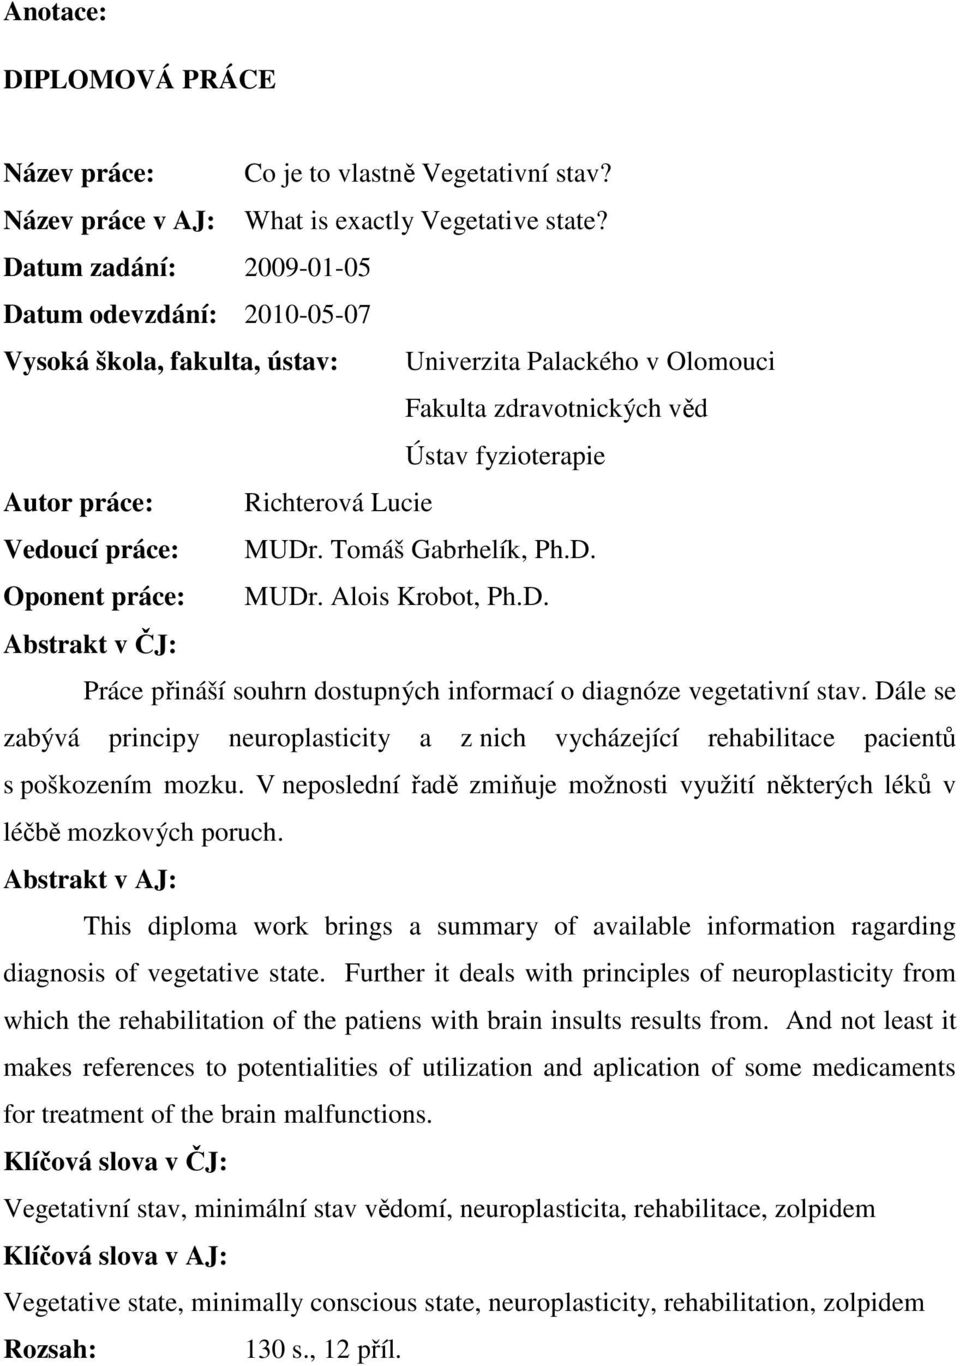 práce: MUDr. Tomáš Gabrhelík, Ph.D. Oponent práce: MUDr. Alois Krobot, Ph.D. Abstrakt v ČJ: Práce přináší souhrn dostupných informací o diagnóze vegetativní stav.